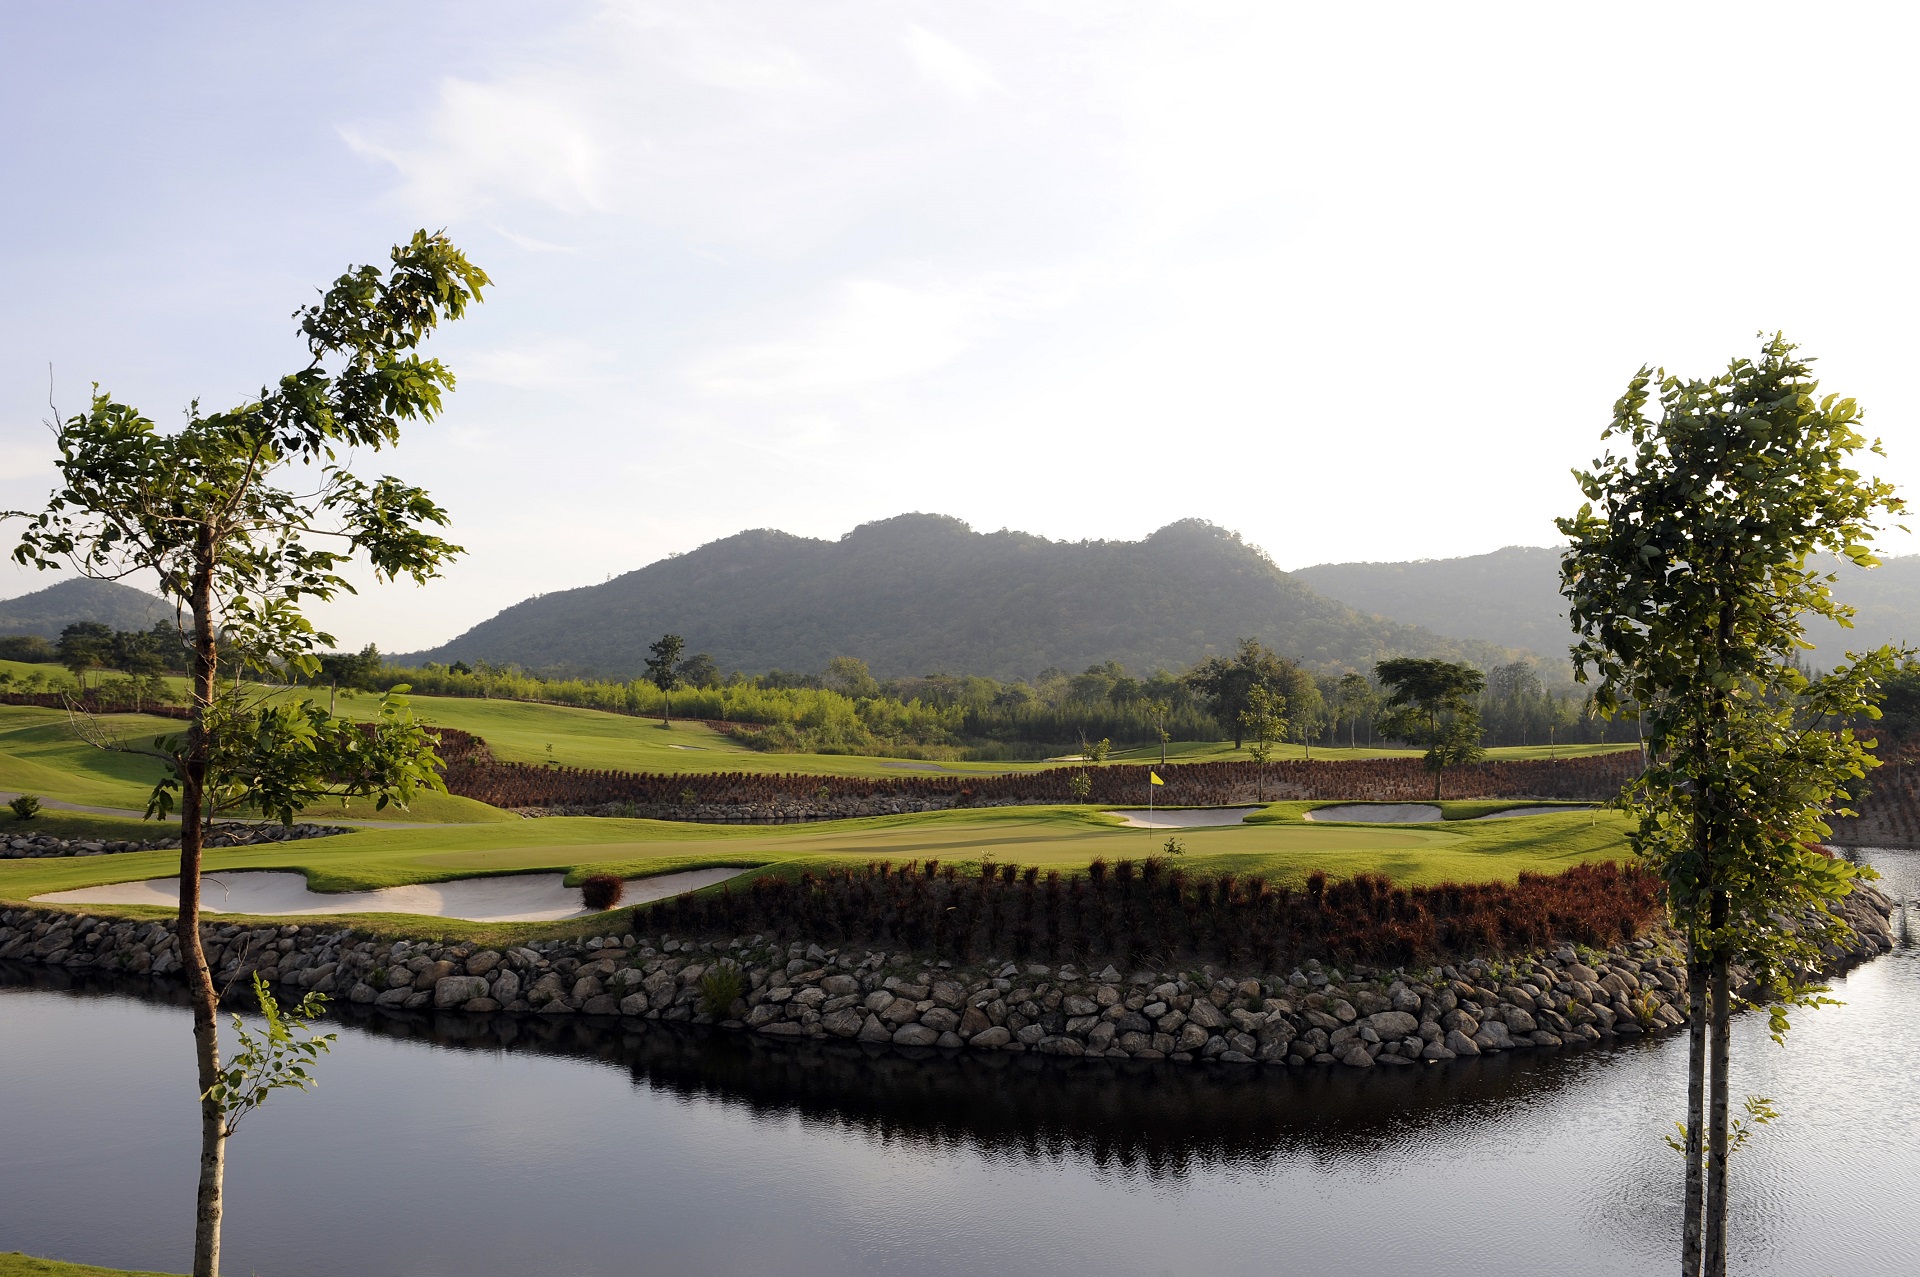 Black Mountain Golf Club i Hua Hin, Thailand byder på en imponerende golfbane omgivet af smuk natur. Disse velplejede baner er kendt for at